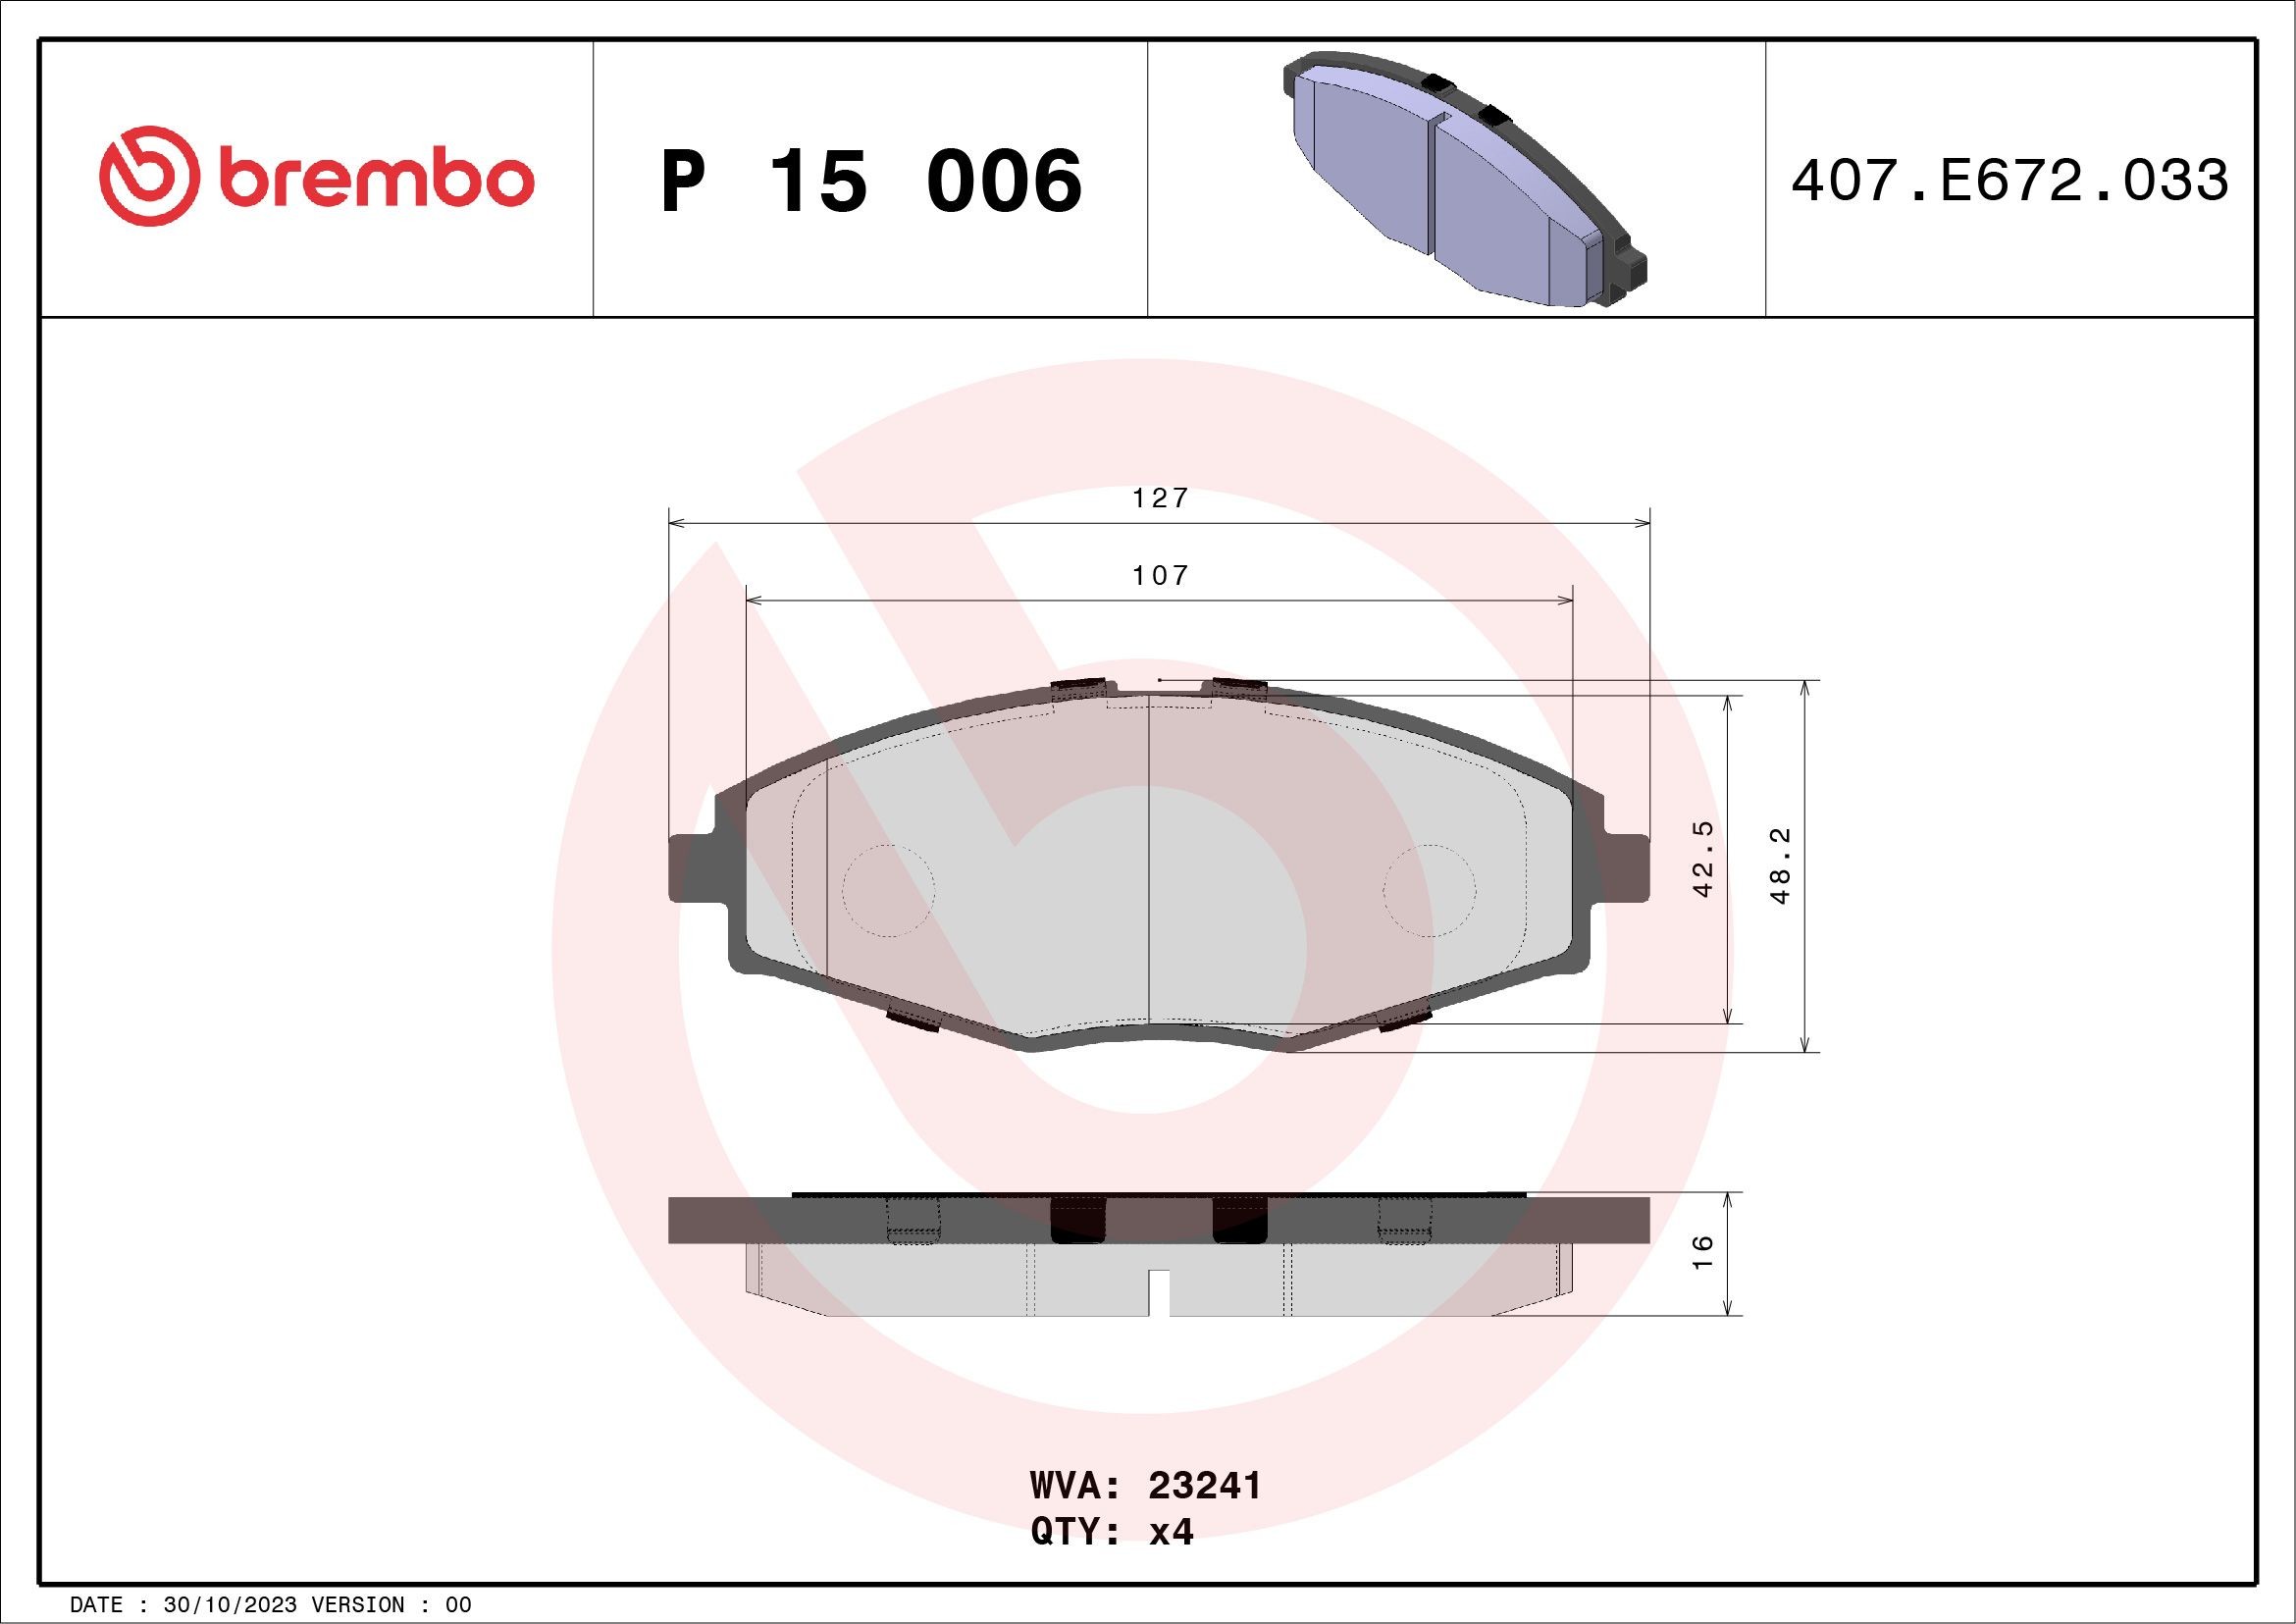 BREMBO P 15 006 Brake pads CHEVROLET SPARK 2012 price